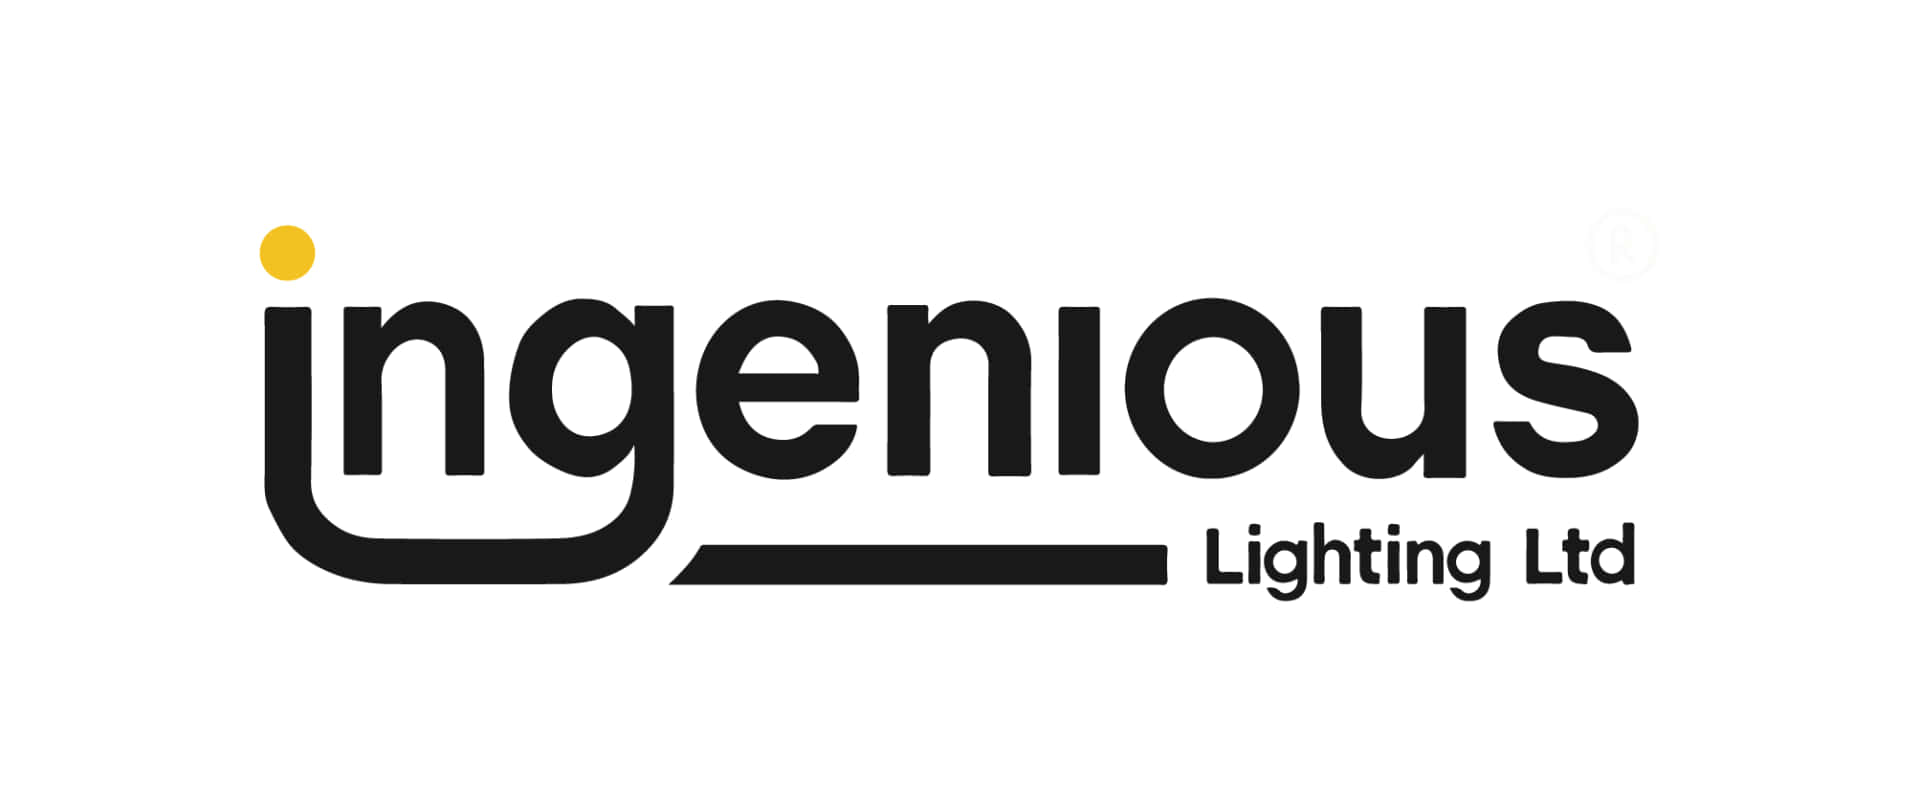 Ingenious Lighting Ltd Logo Wallpaper